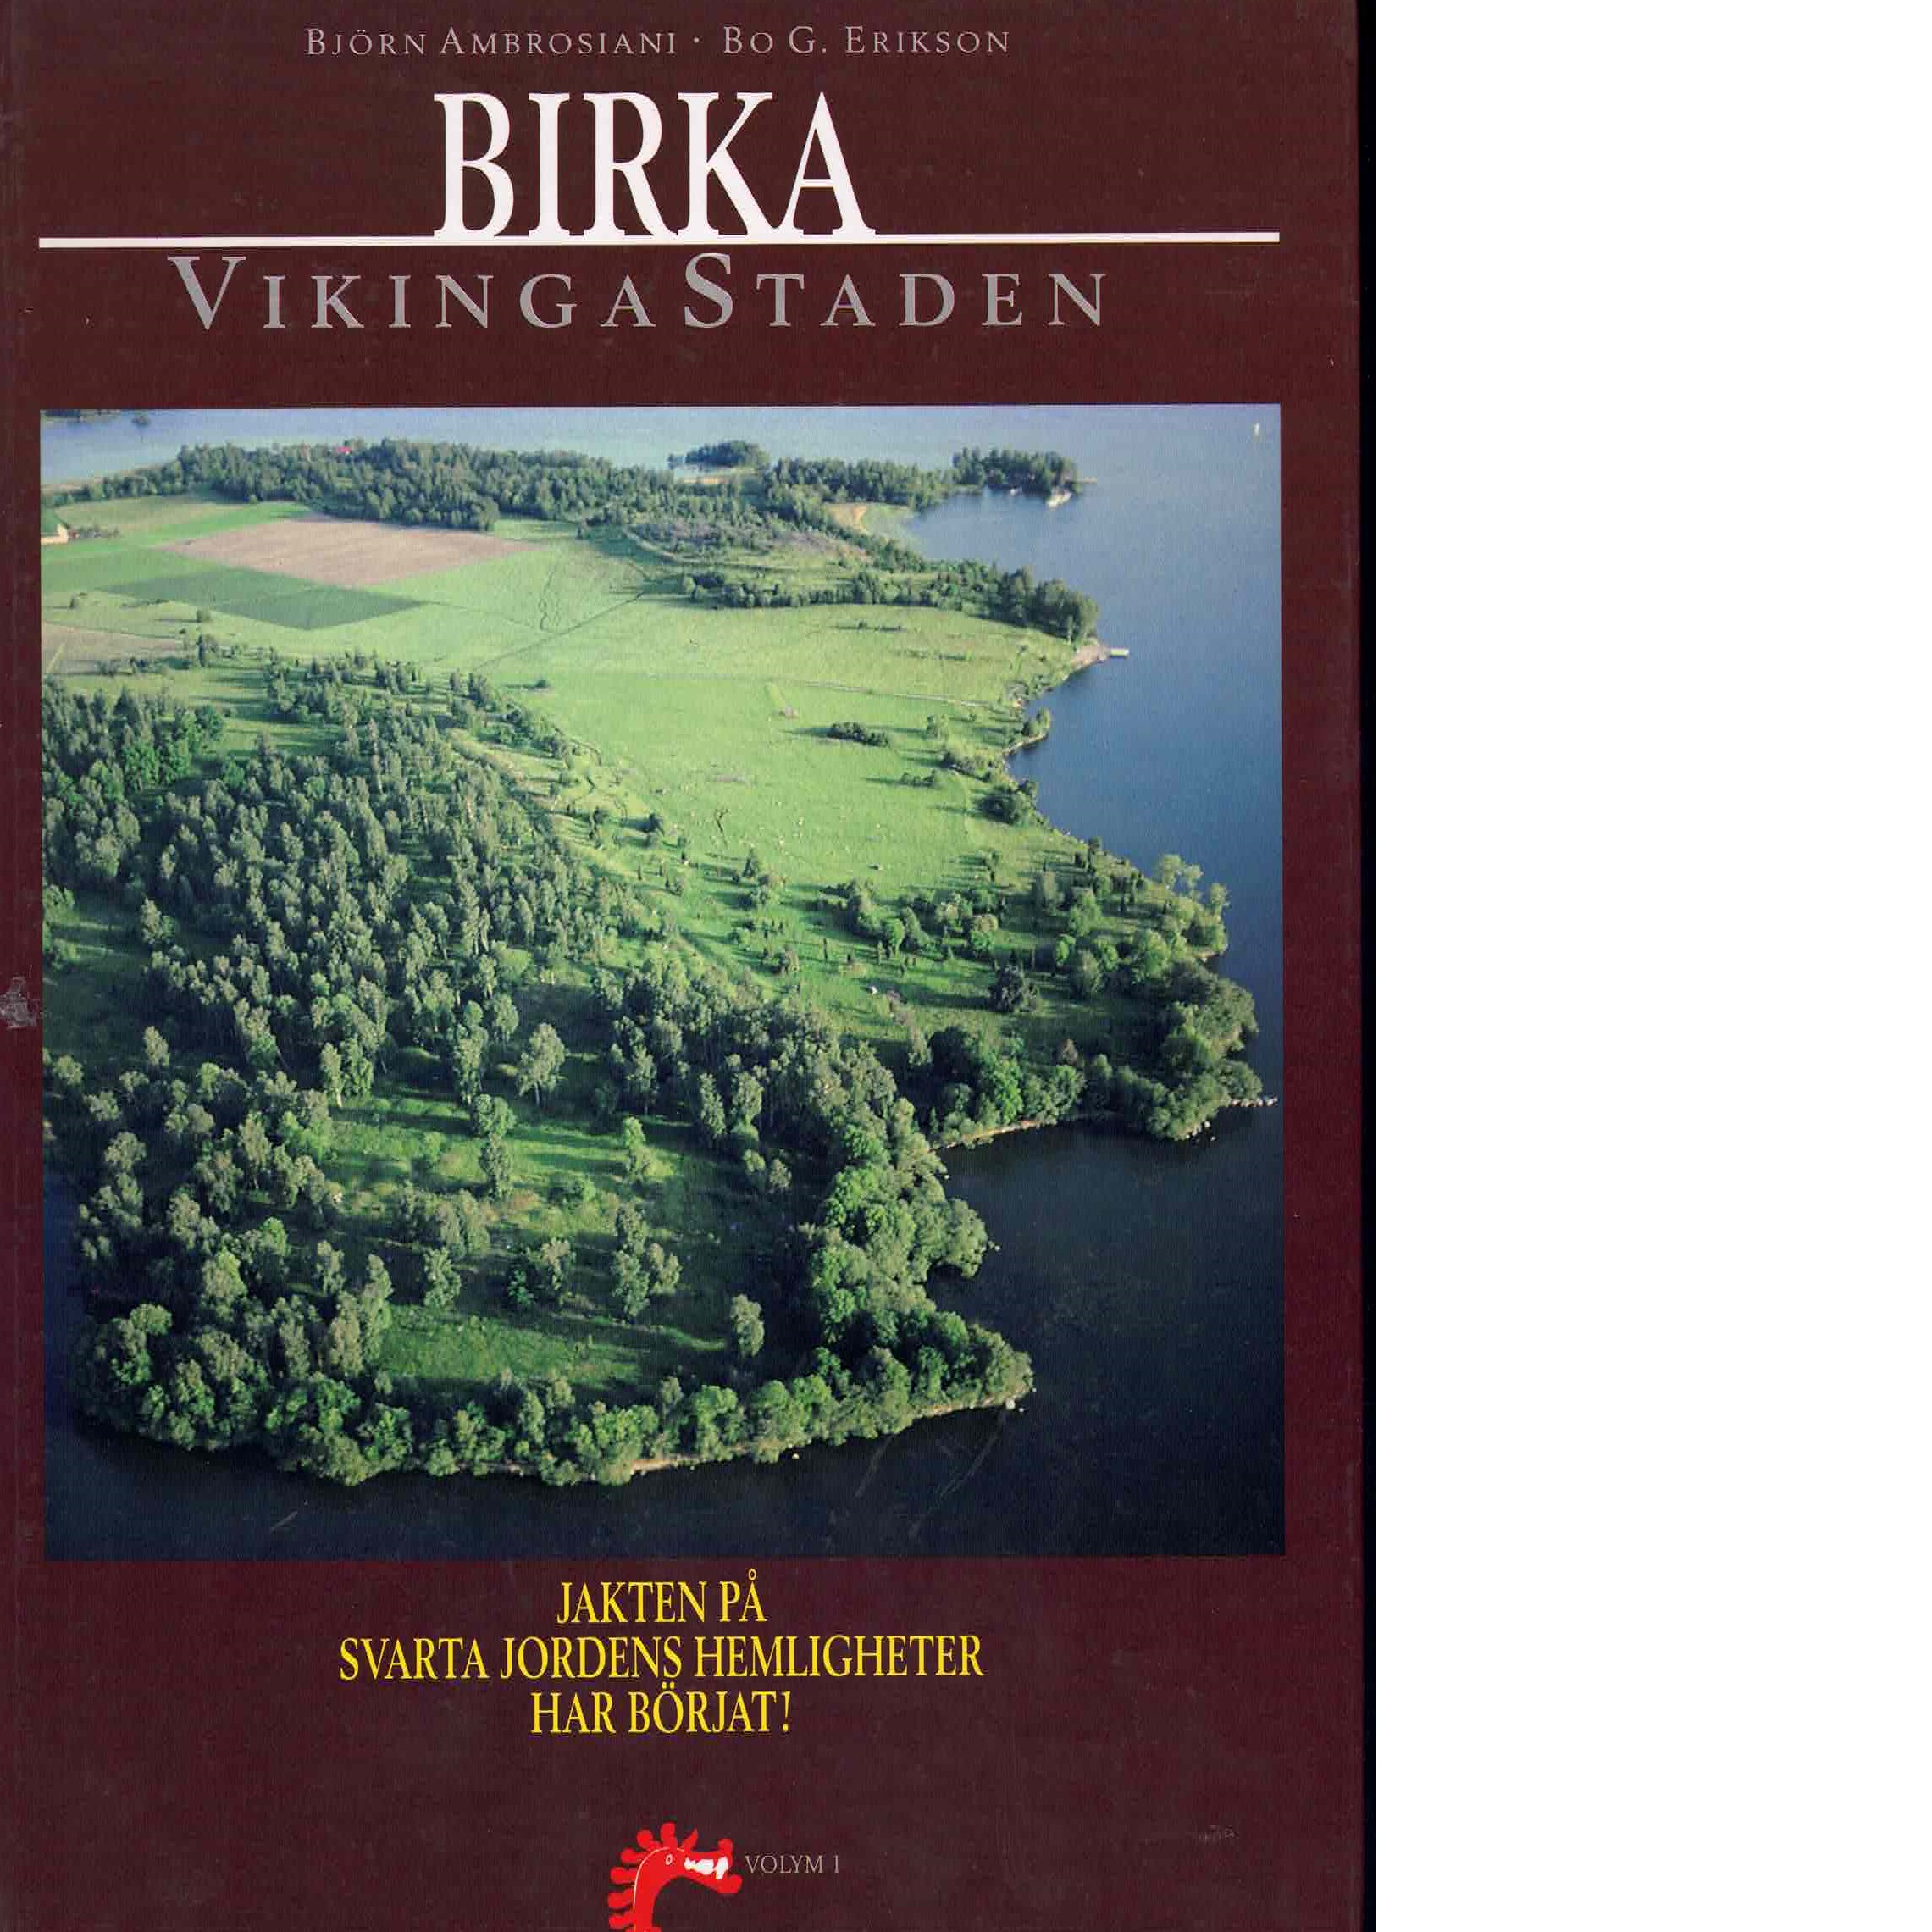 Birka vikingastaden Vol. 1 [Jakten på Svarta jordens hemligheter har börjat!] - Ambrosiani, Björn